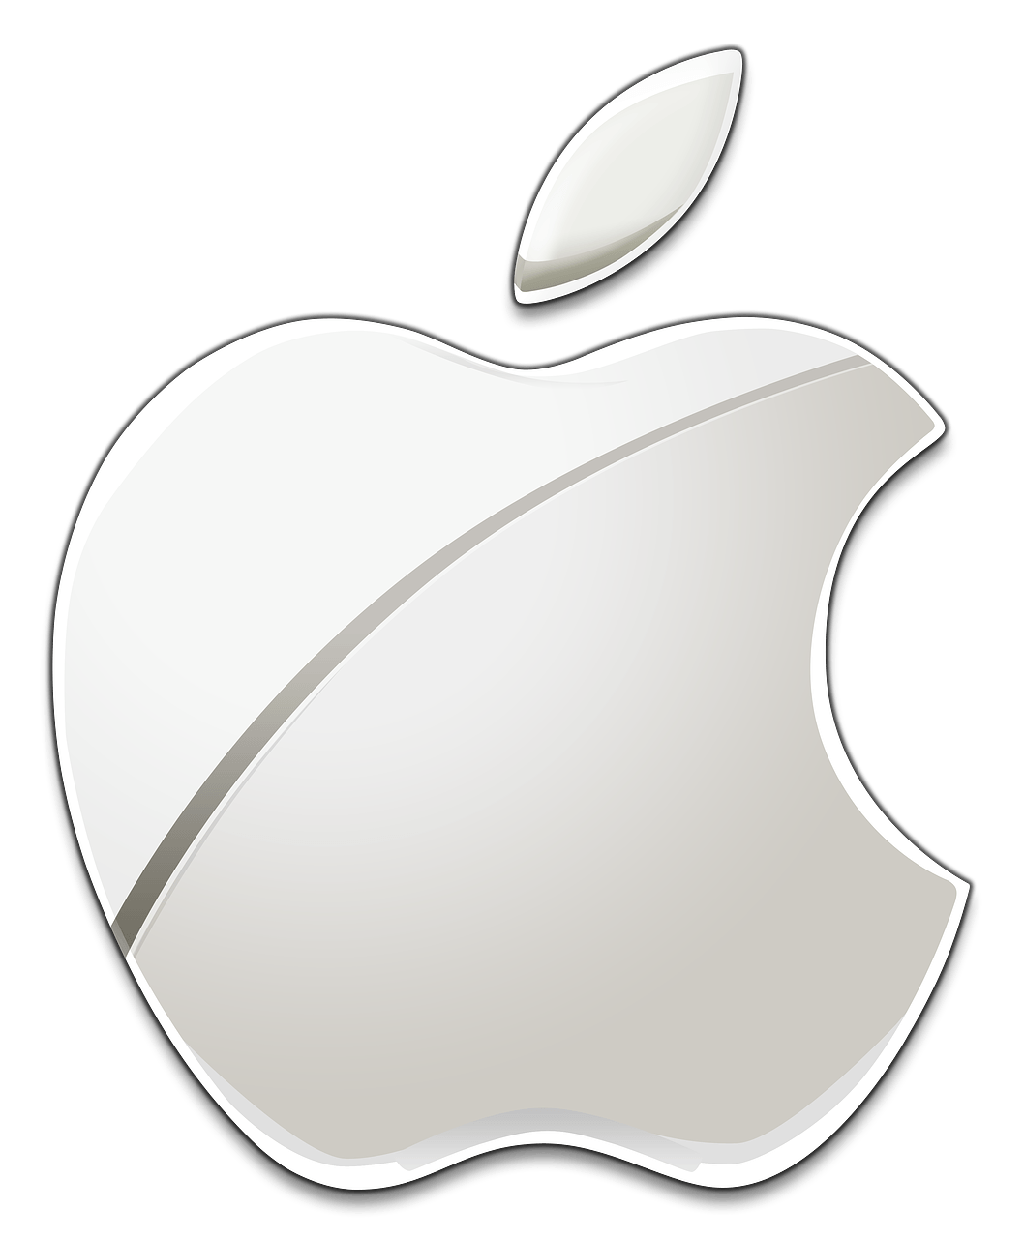 Official Apple Logo - Official Apple Logo Png. Broken JoysticksBroken Joysticks